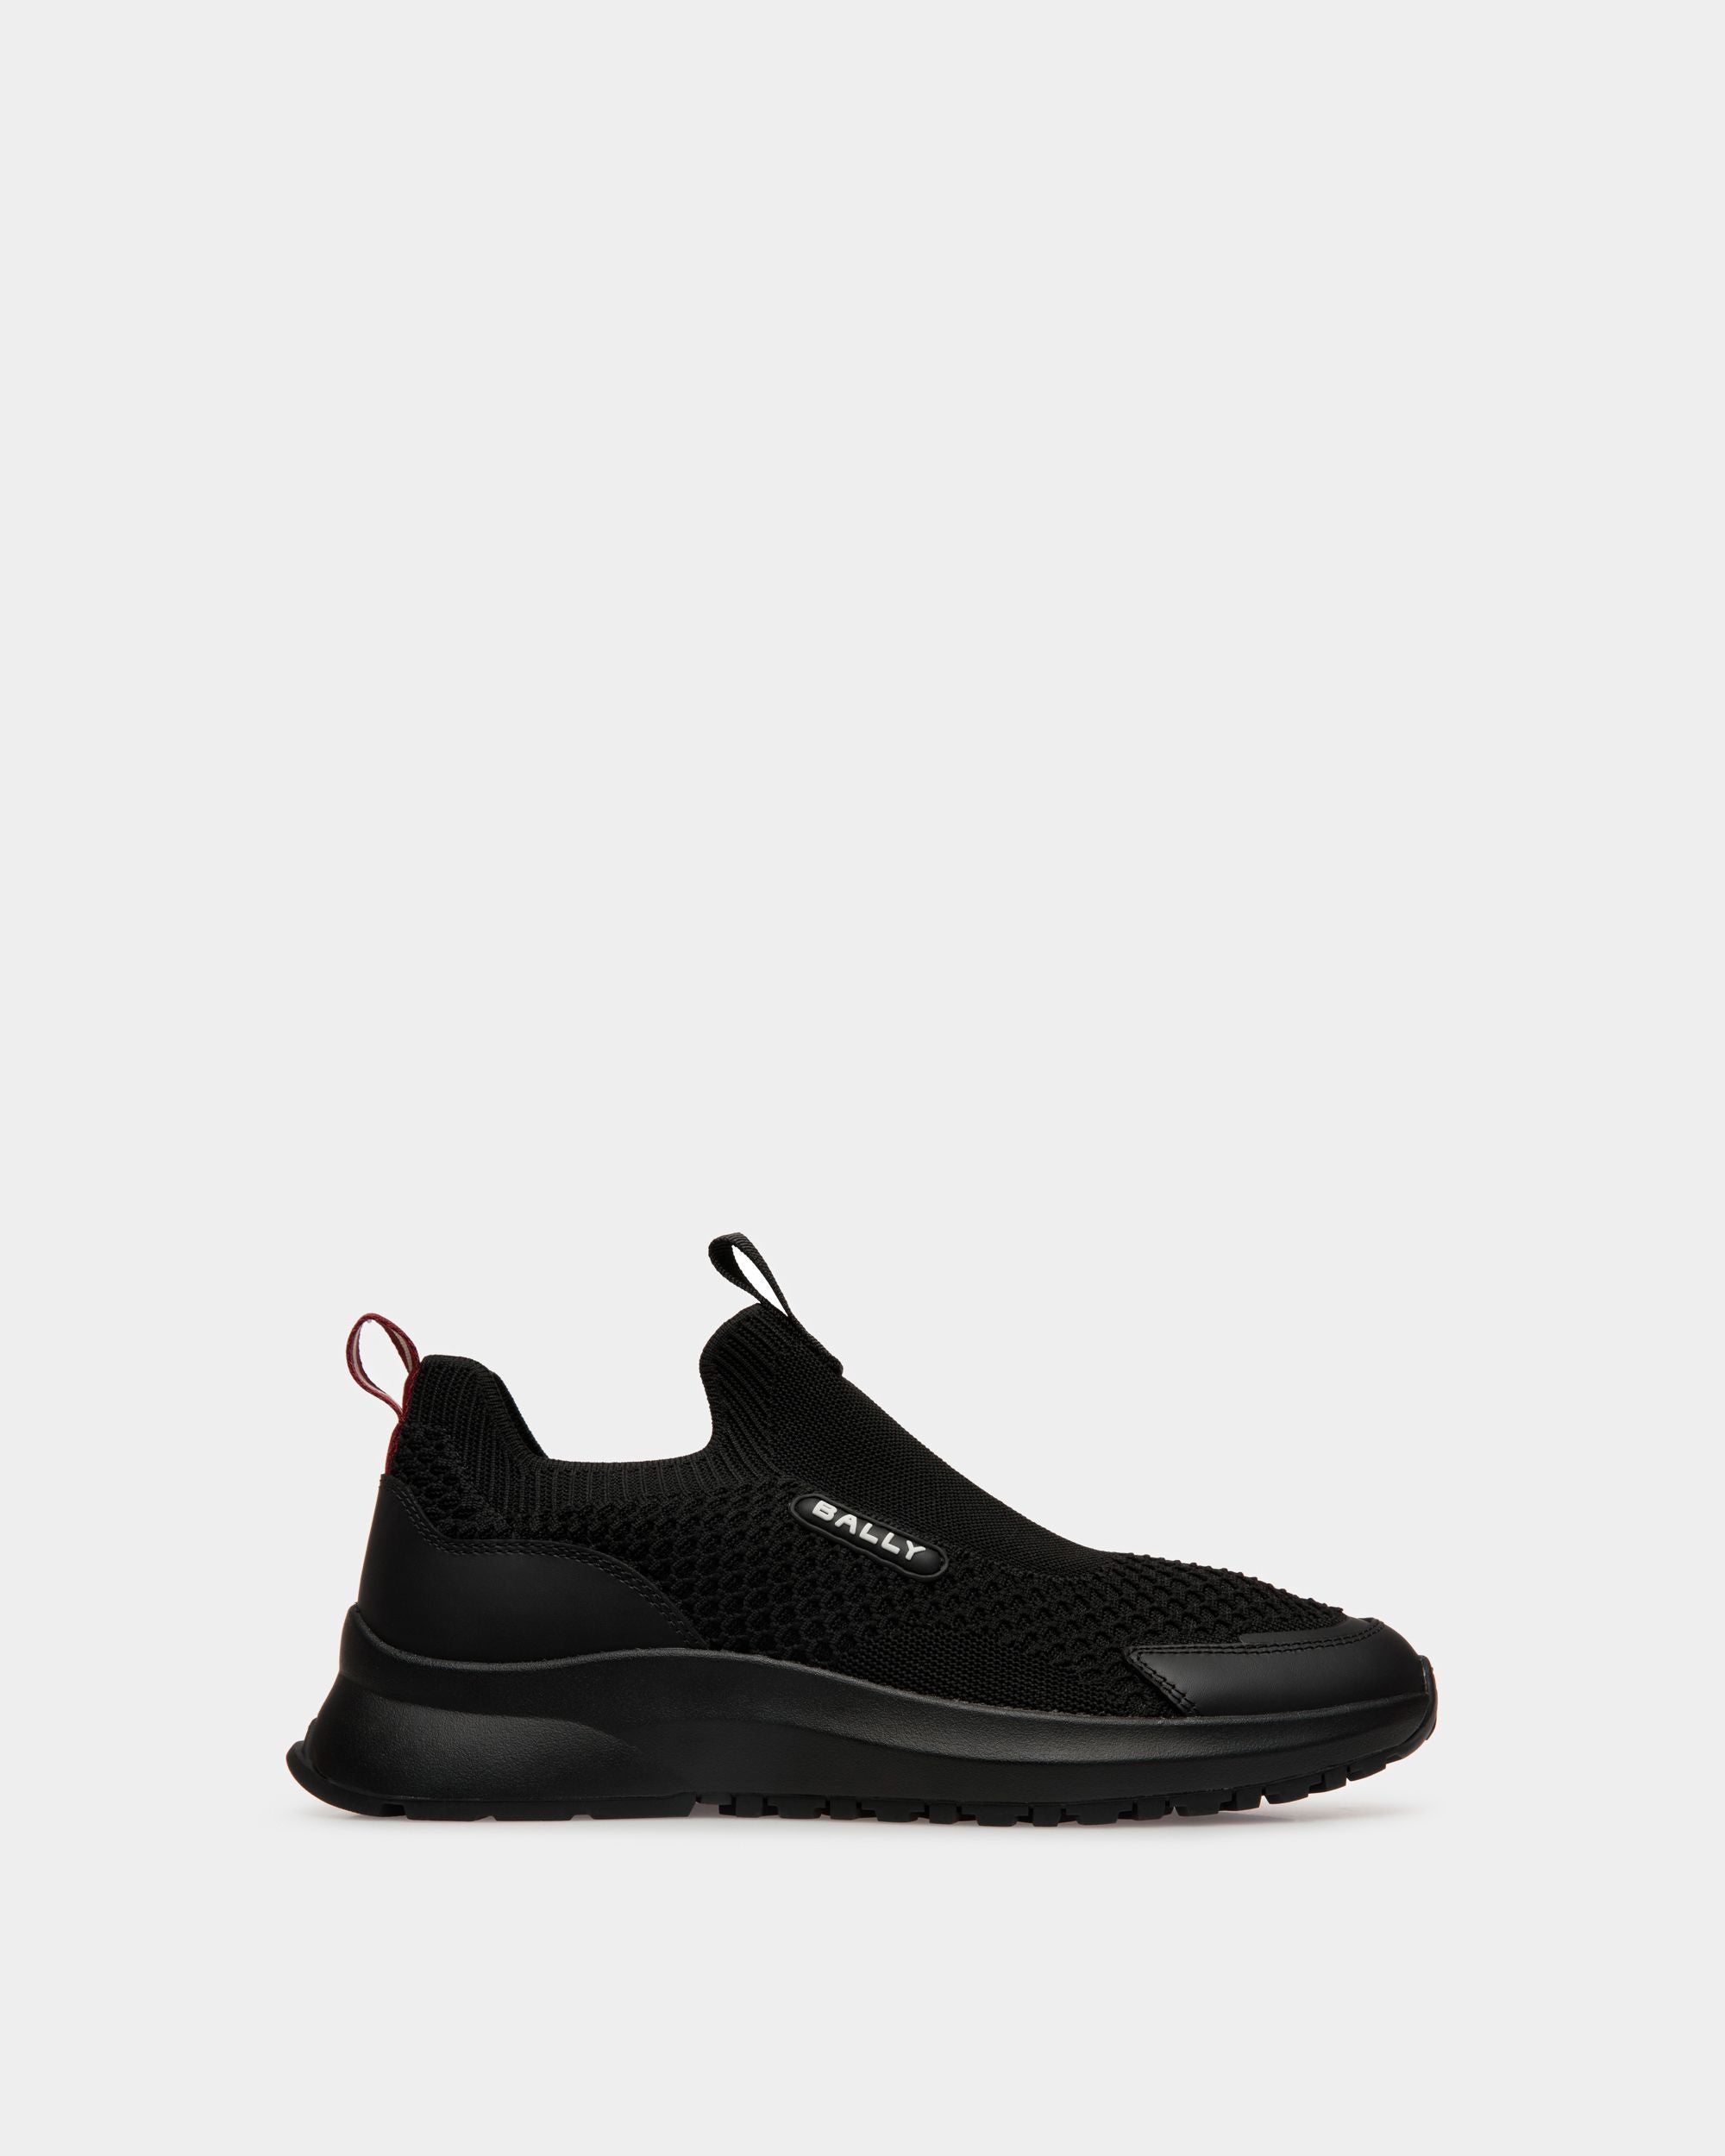 Outline | Herren-Sneaker aus schwarzem Nylon | Bally | Still Life Seite